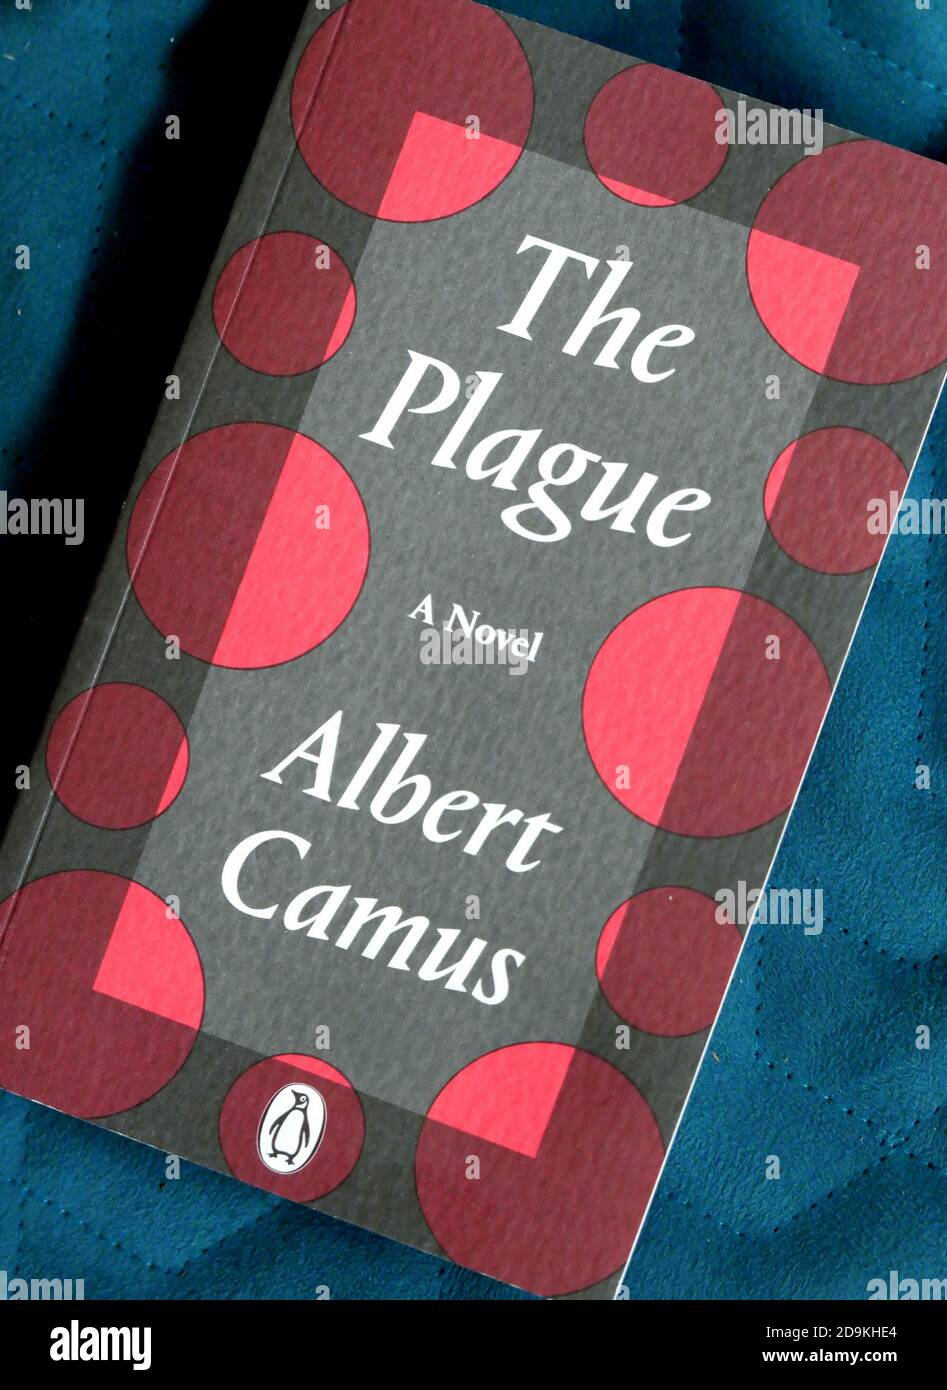 La plaga, una novela publicada por primera vez en 1947, ha estado vendiendo bien durante la pandemia actual. Foto de stock